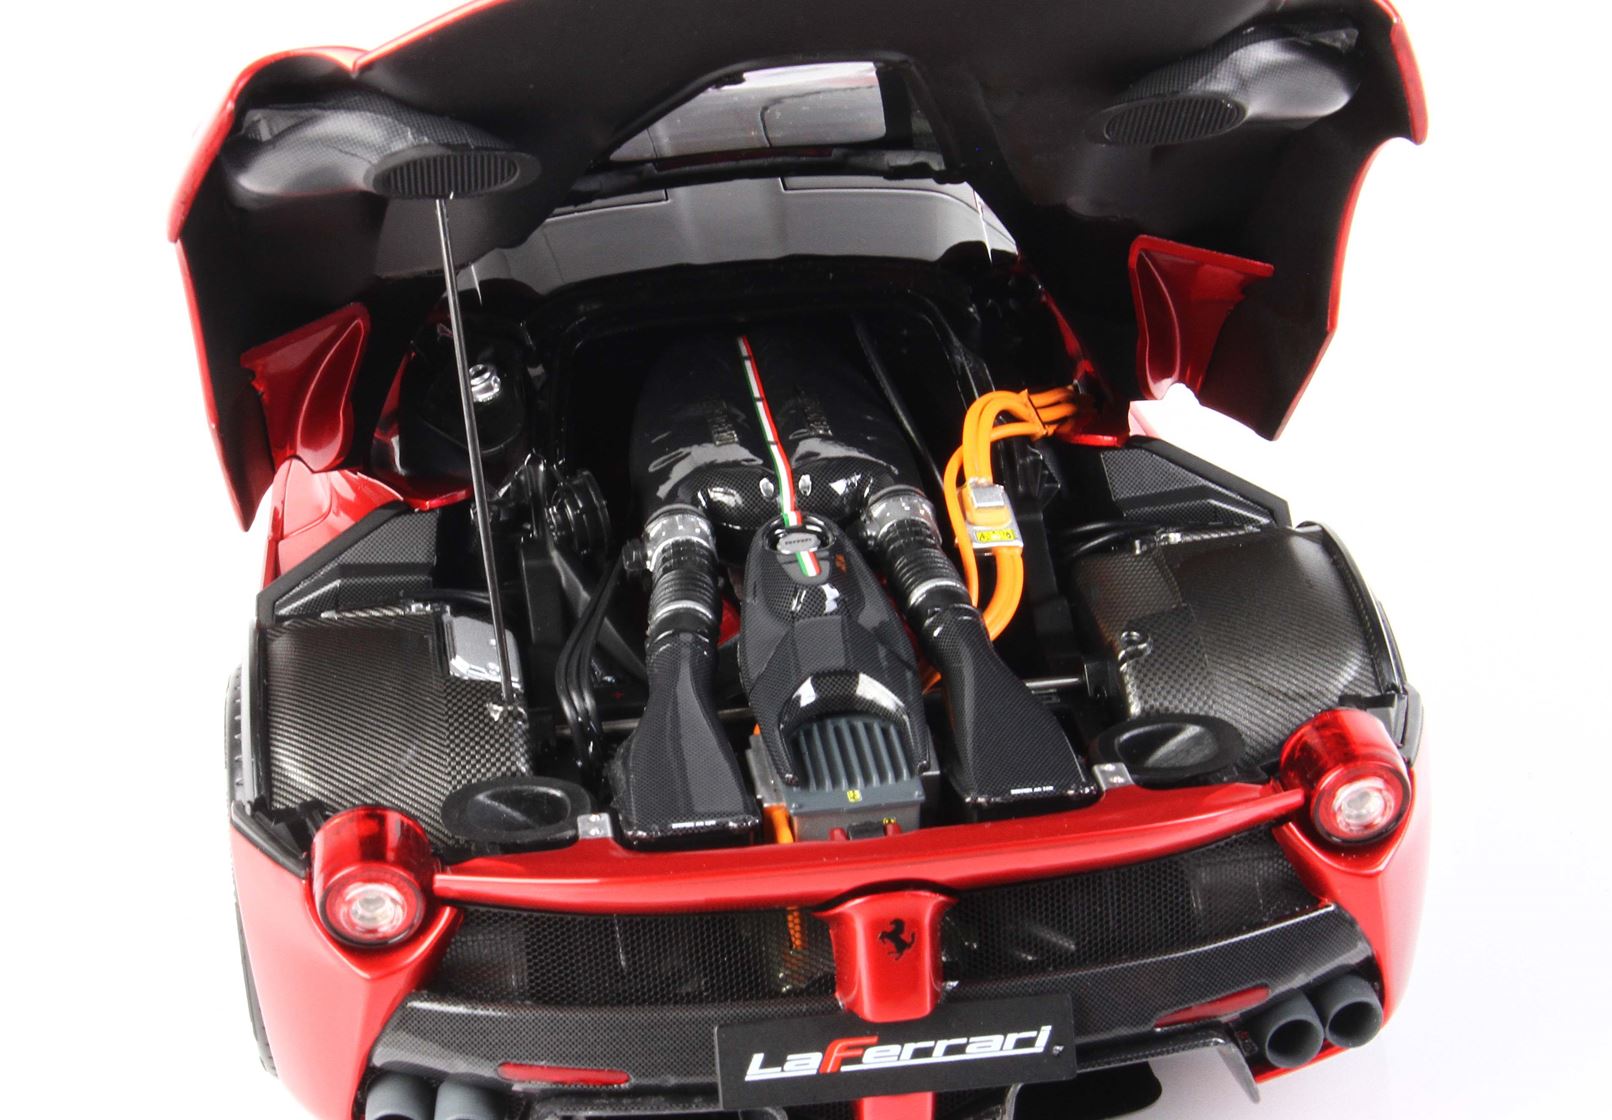 BBR High End Ferrari 1:18 LaFerrari Metallic Red Fire Rosso Fuoco Met –  Stone Model